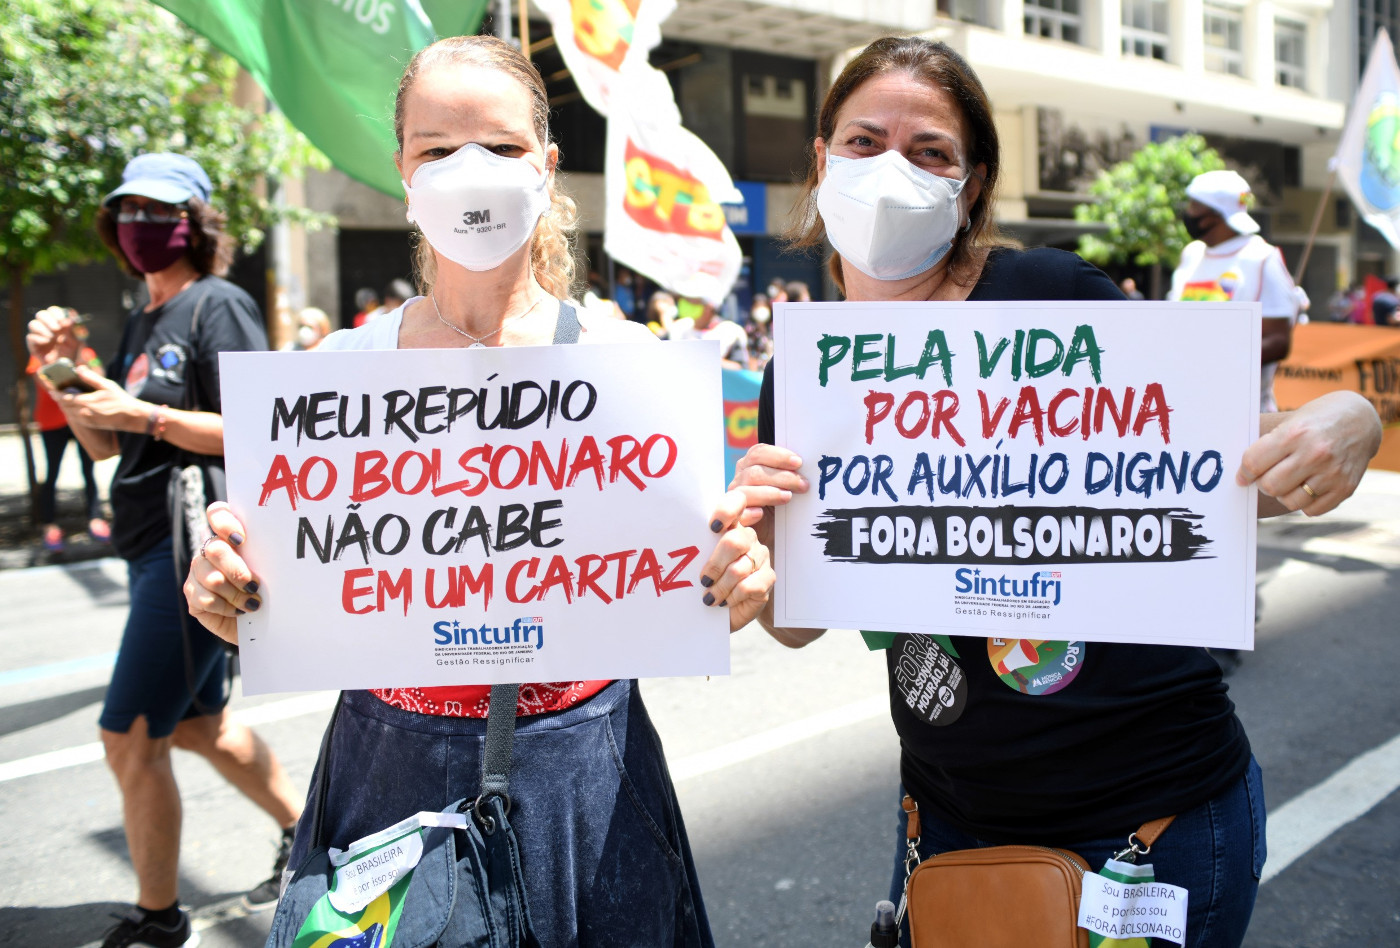 Für das Leben, Impfungen und würdige Sozialleistungen demonstrieren diese beiden Frauen in Rio de Janeiro, Brasilien. Foto: Adveniat/Tobias Käufer